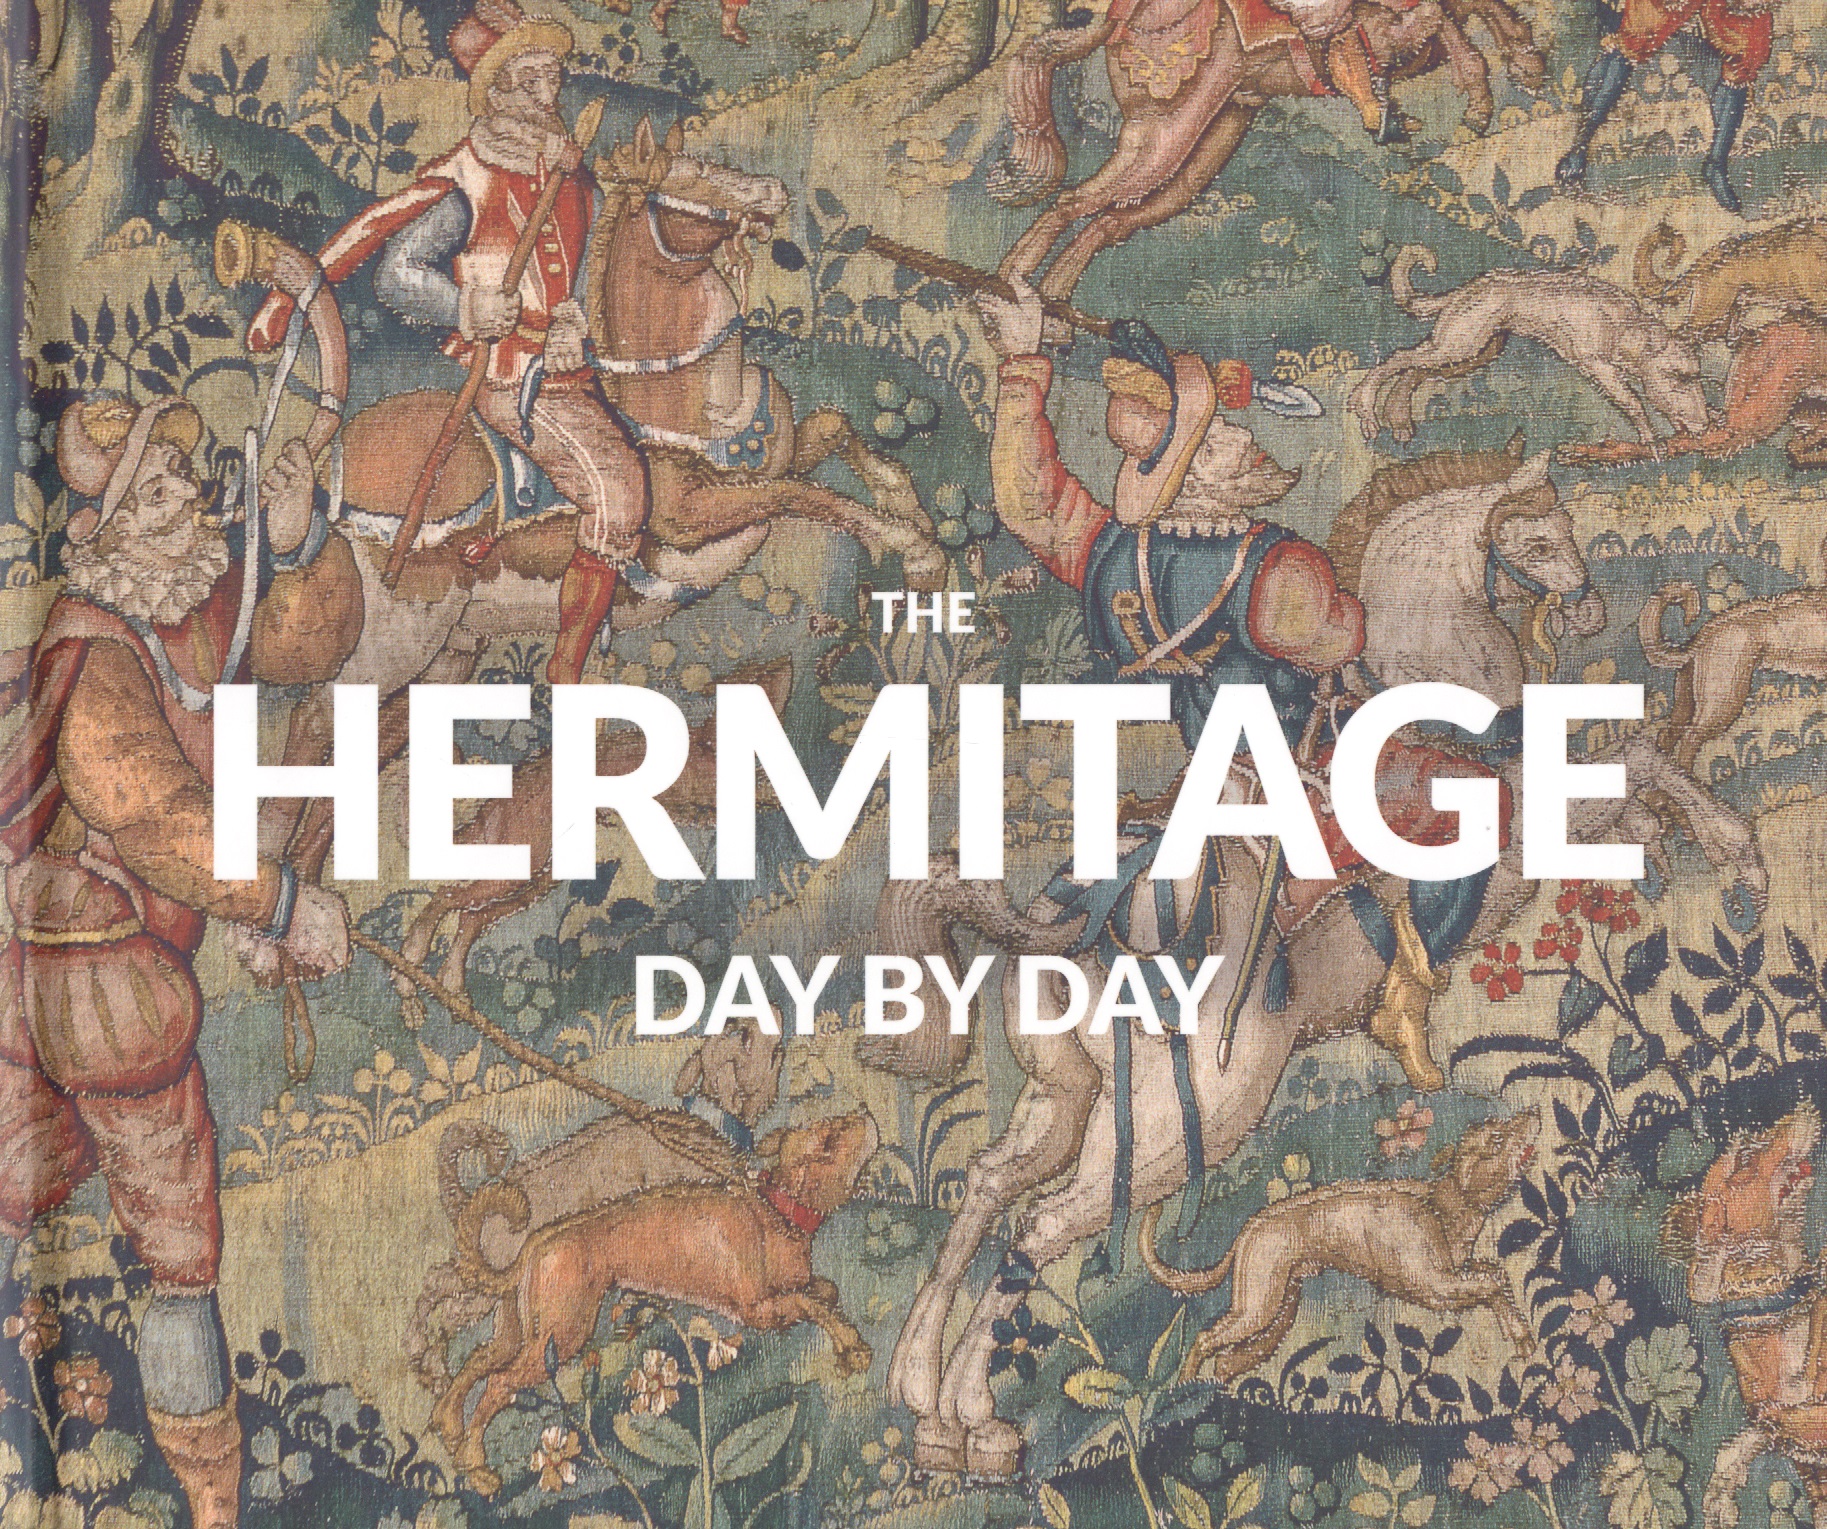 the hermitage day by day The Hermitage. Day by Day